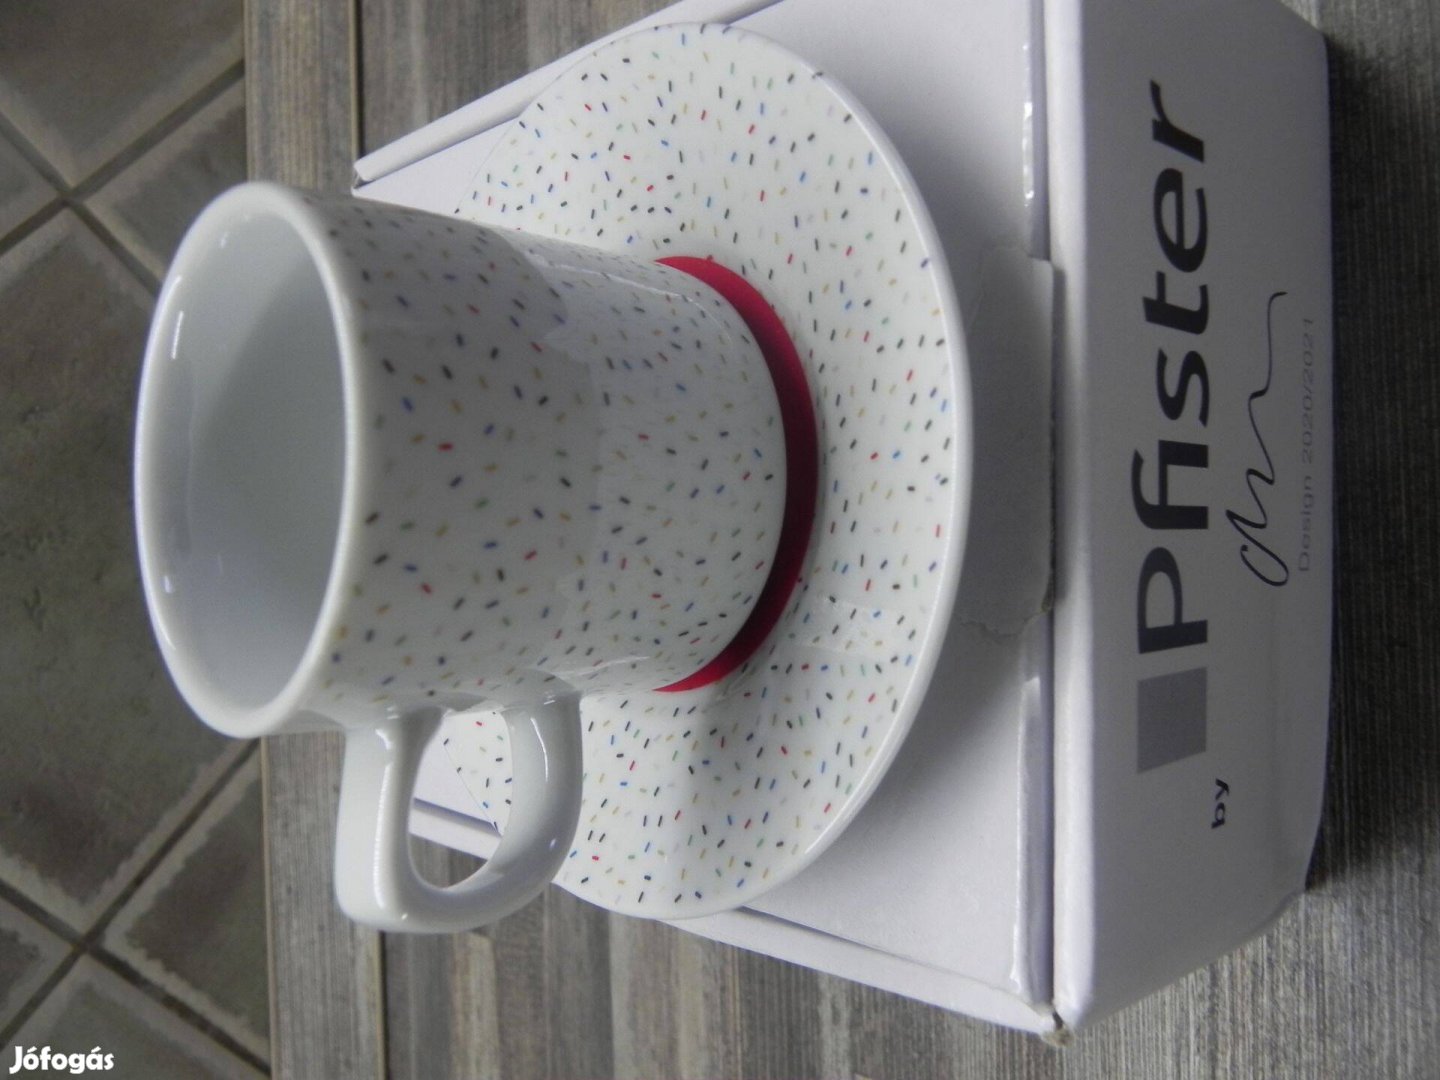 Espresso csésze Pfister Design 2020/2021 eszpresszó csésze A Pfister